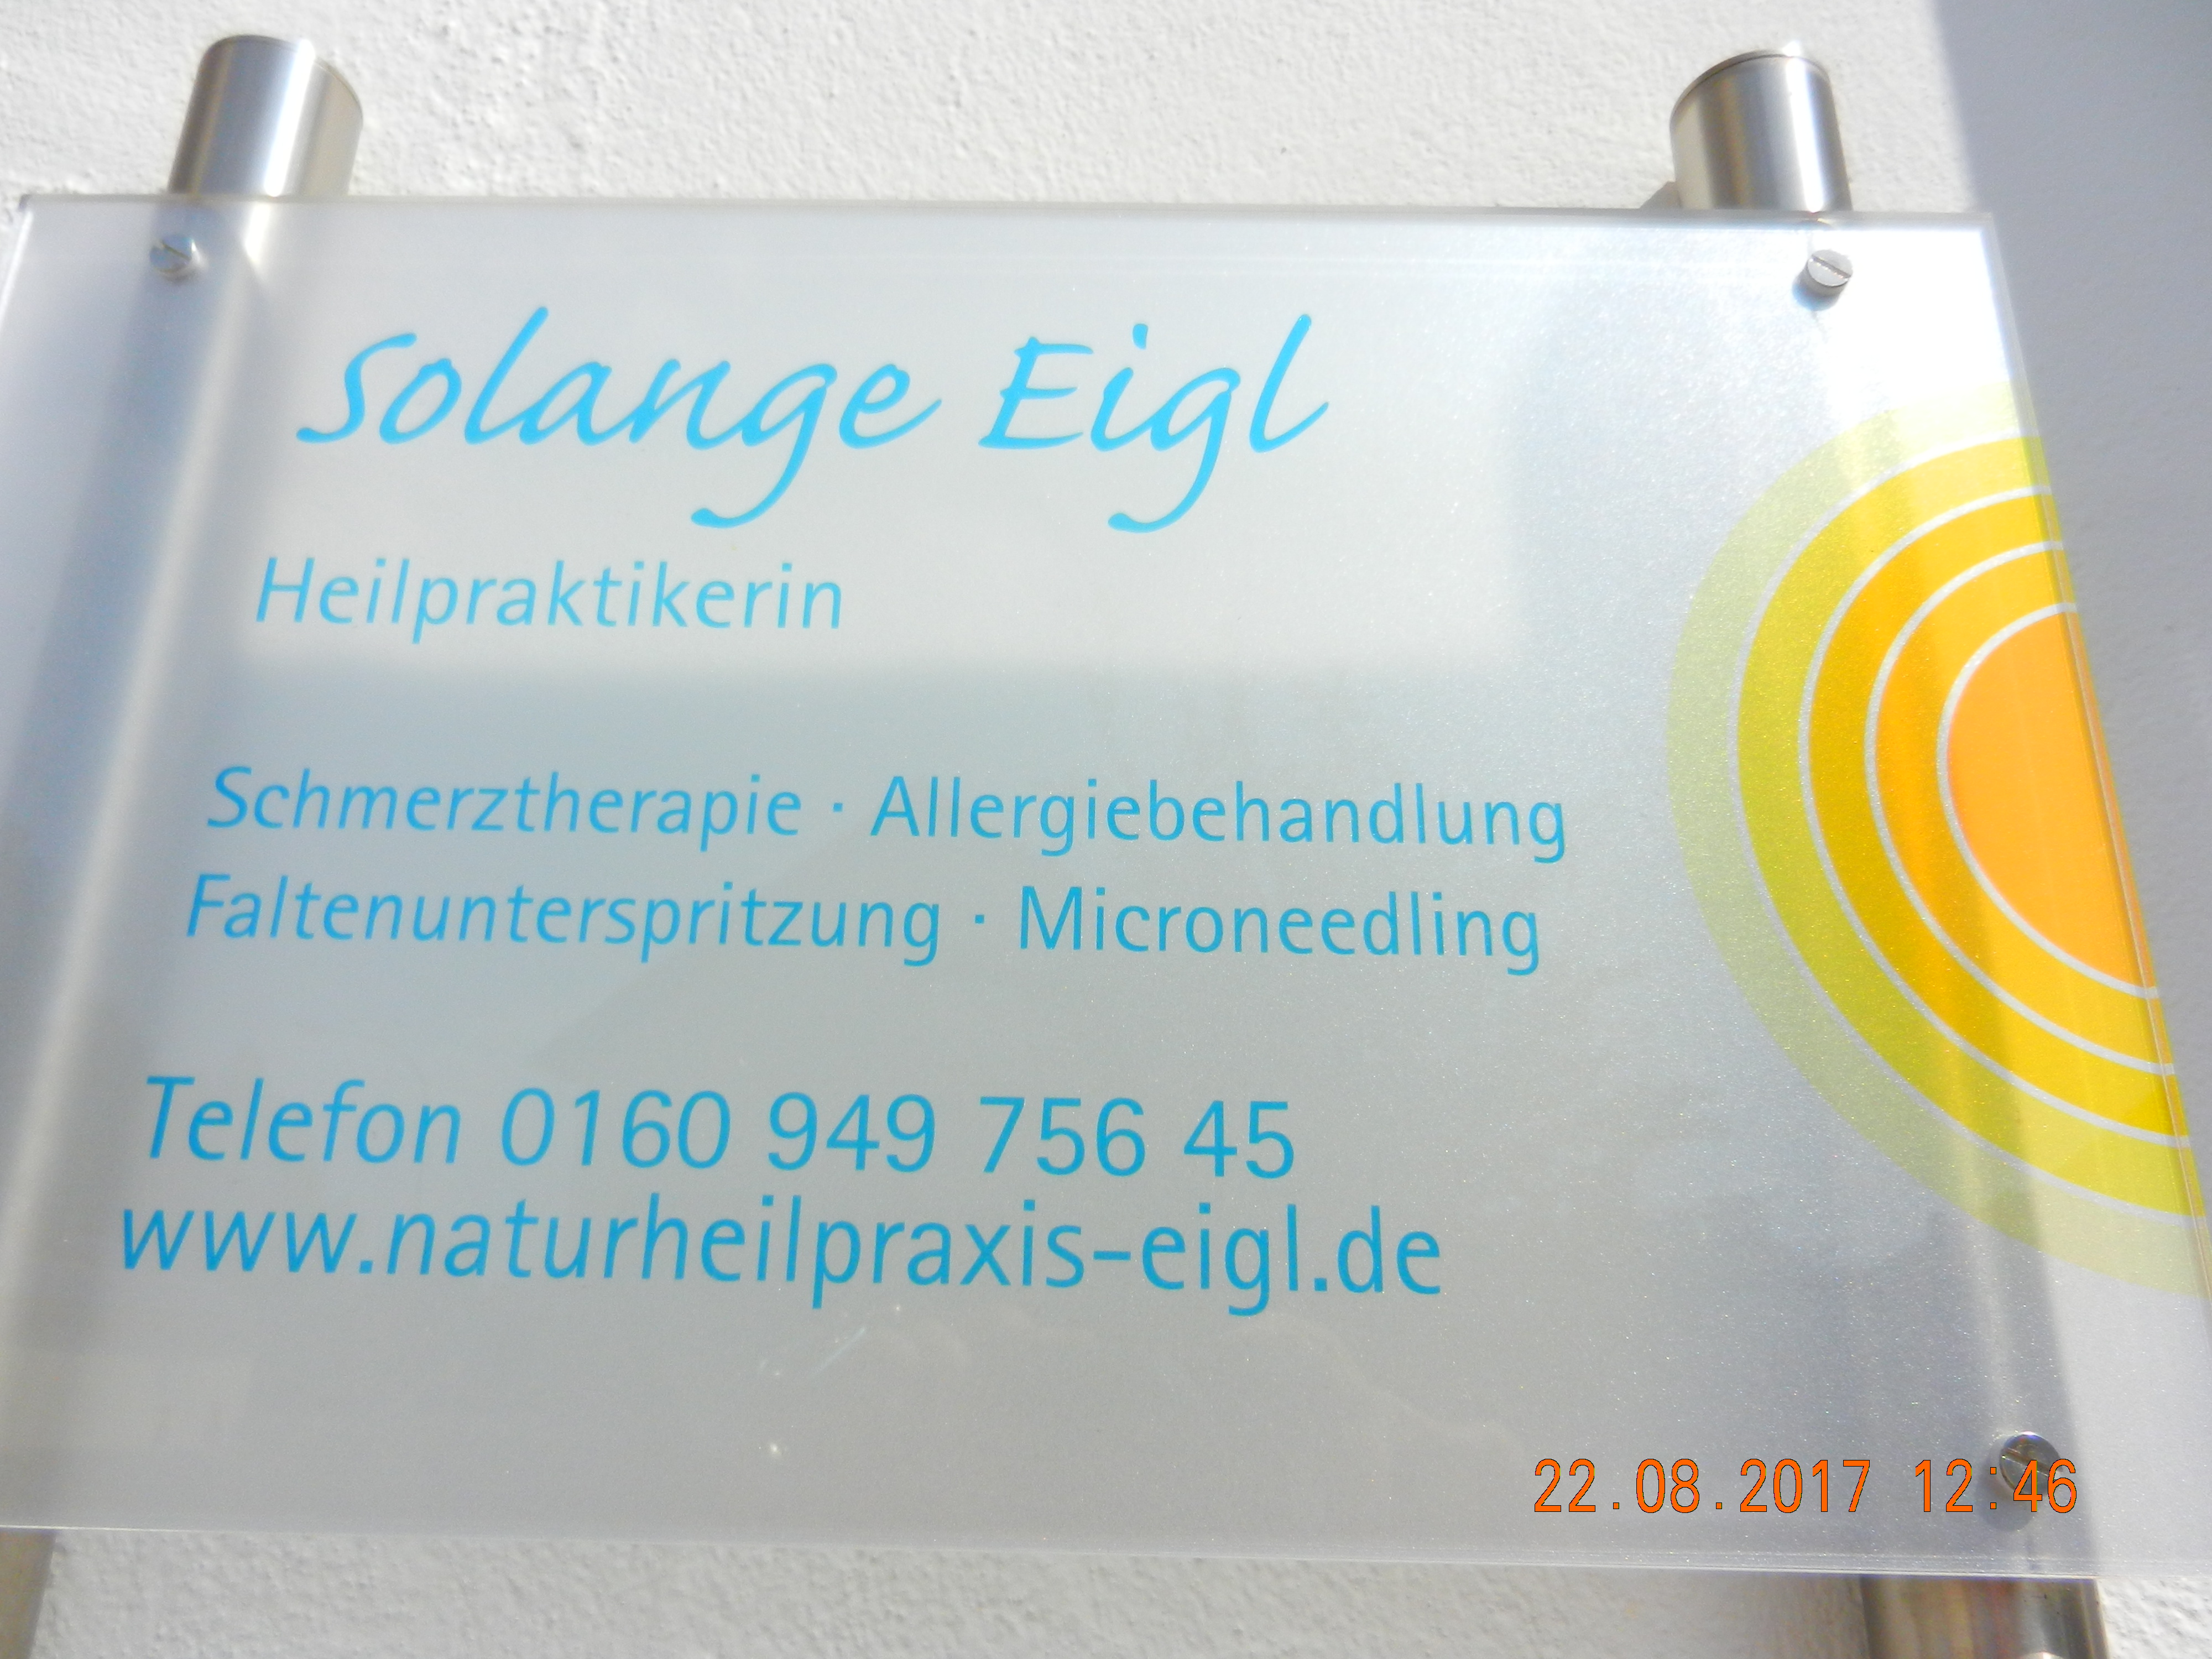 Bild 3 Solange Eigl - Heilpraktikerin in Essenbach